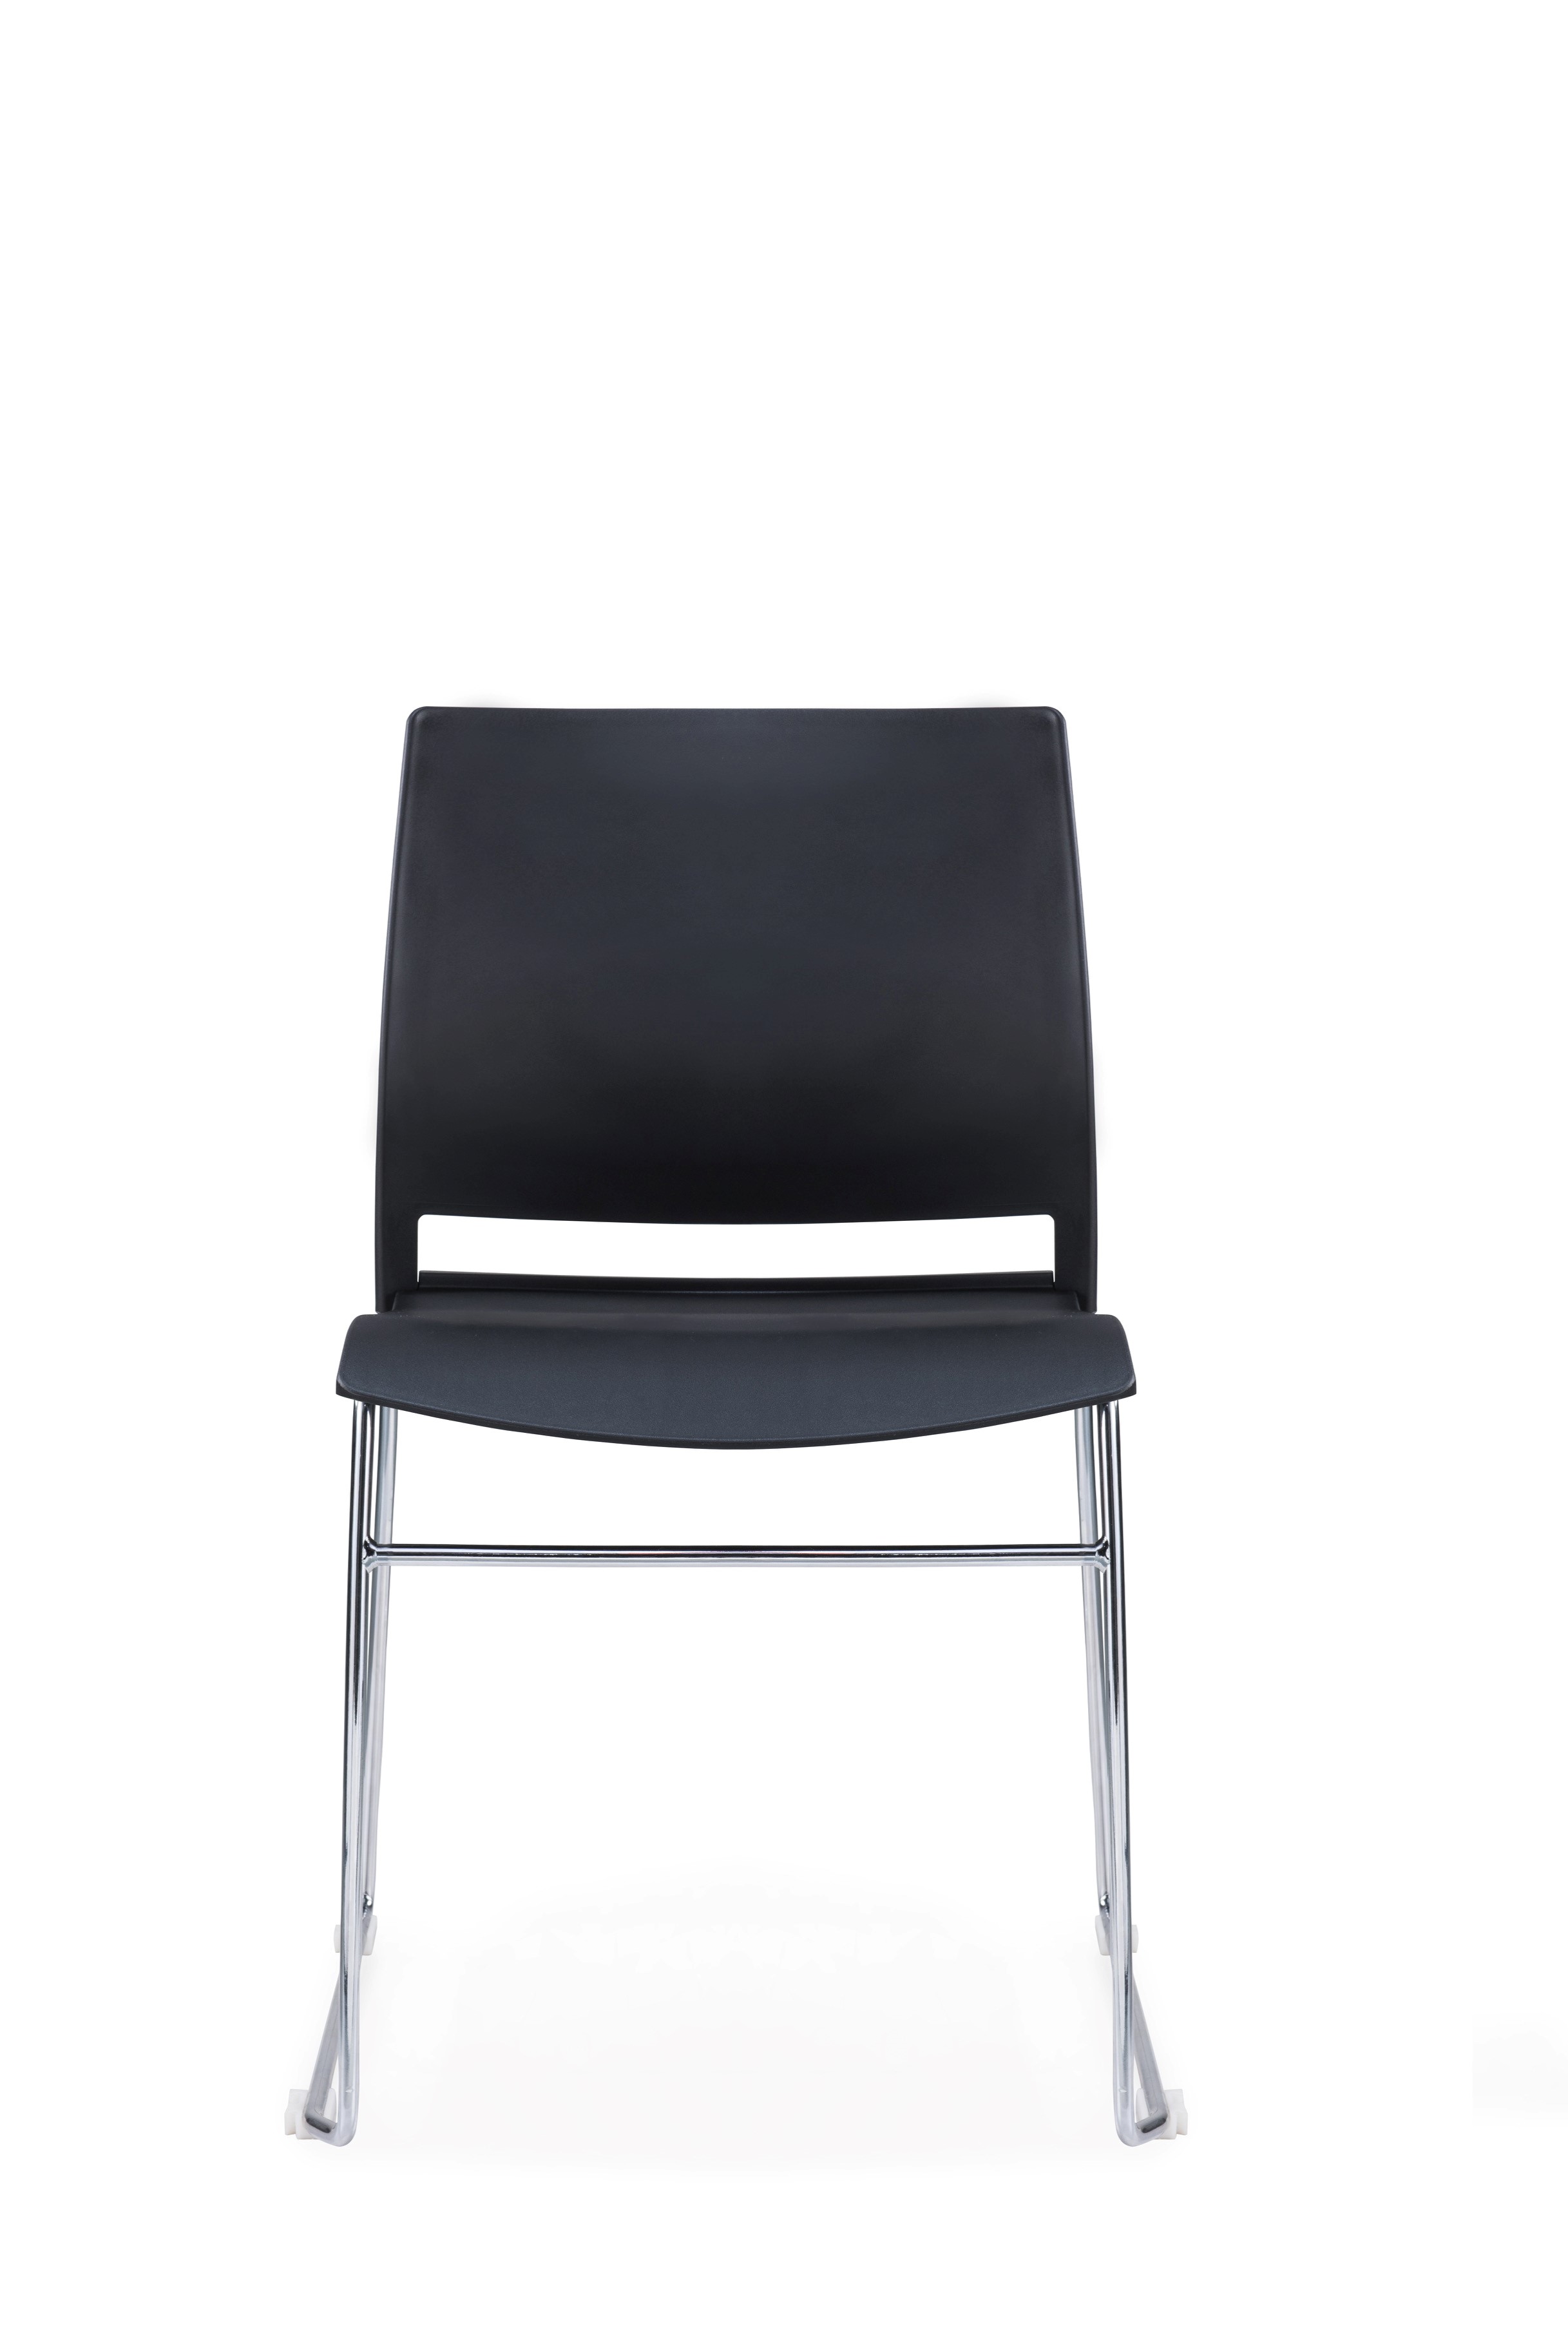 Designer stacking chair white , black or grey polypropylene yellow 